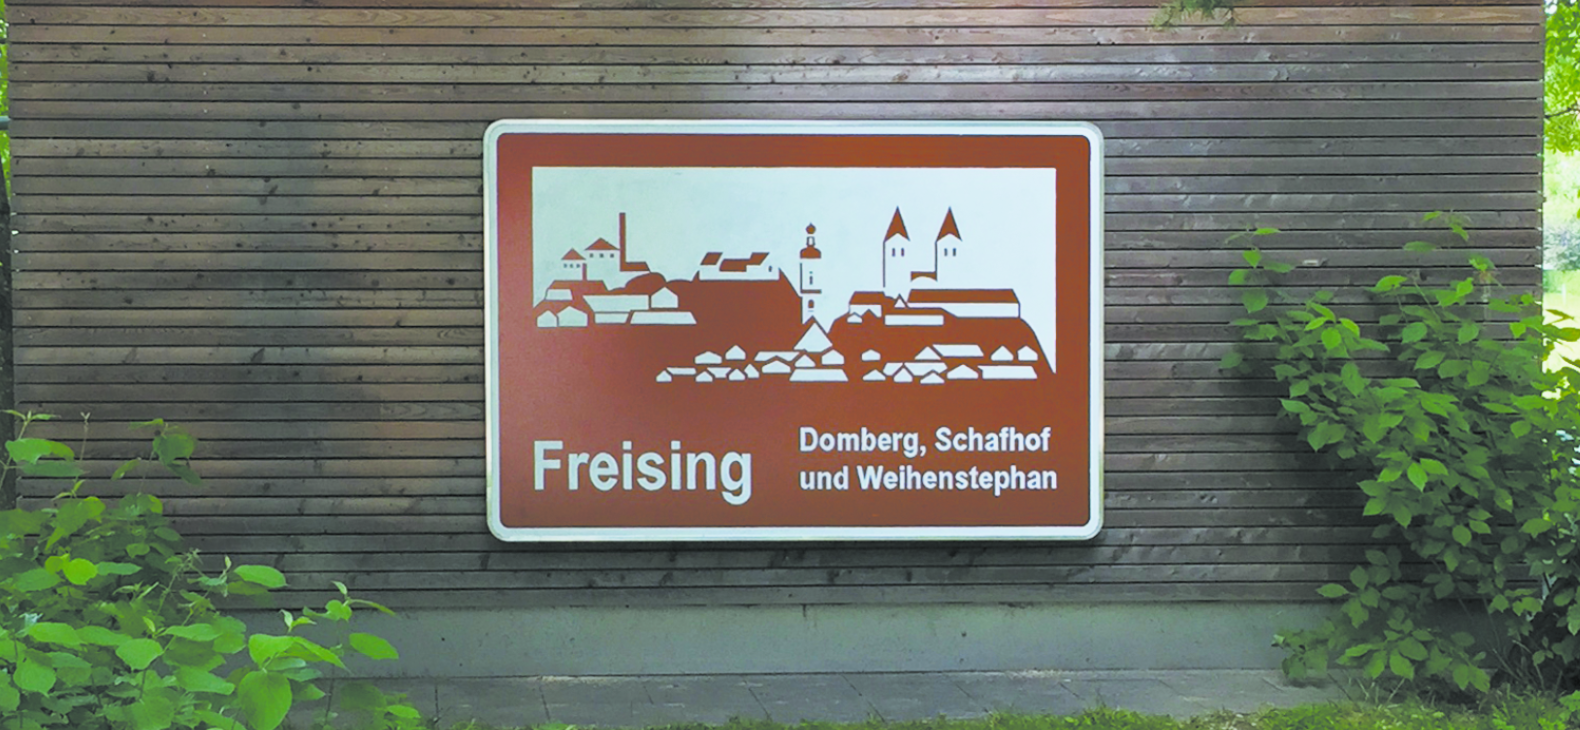 Martin Schmidt: Freising - Schafhof